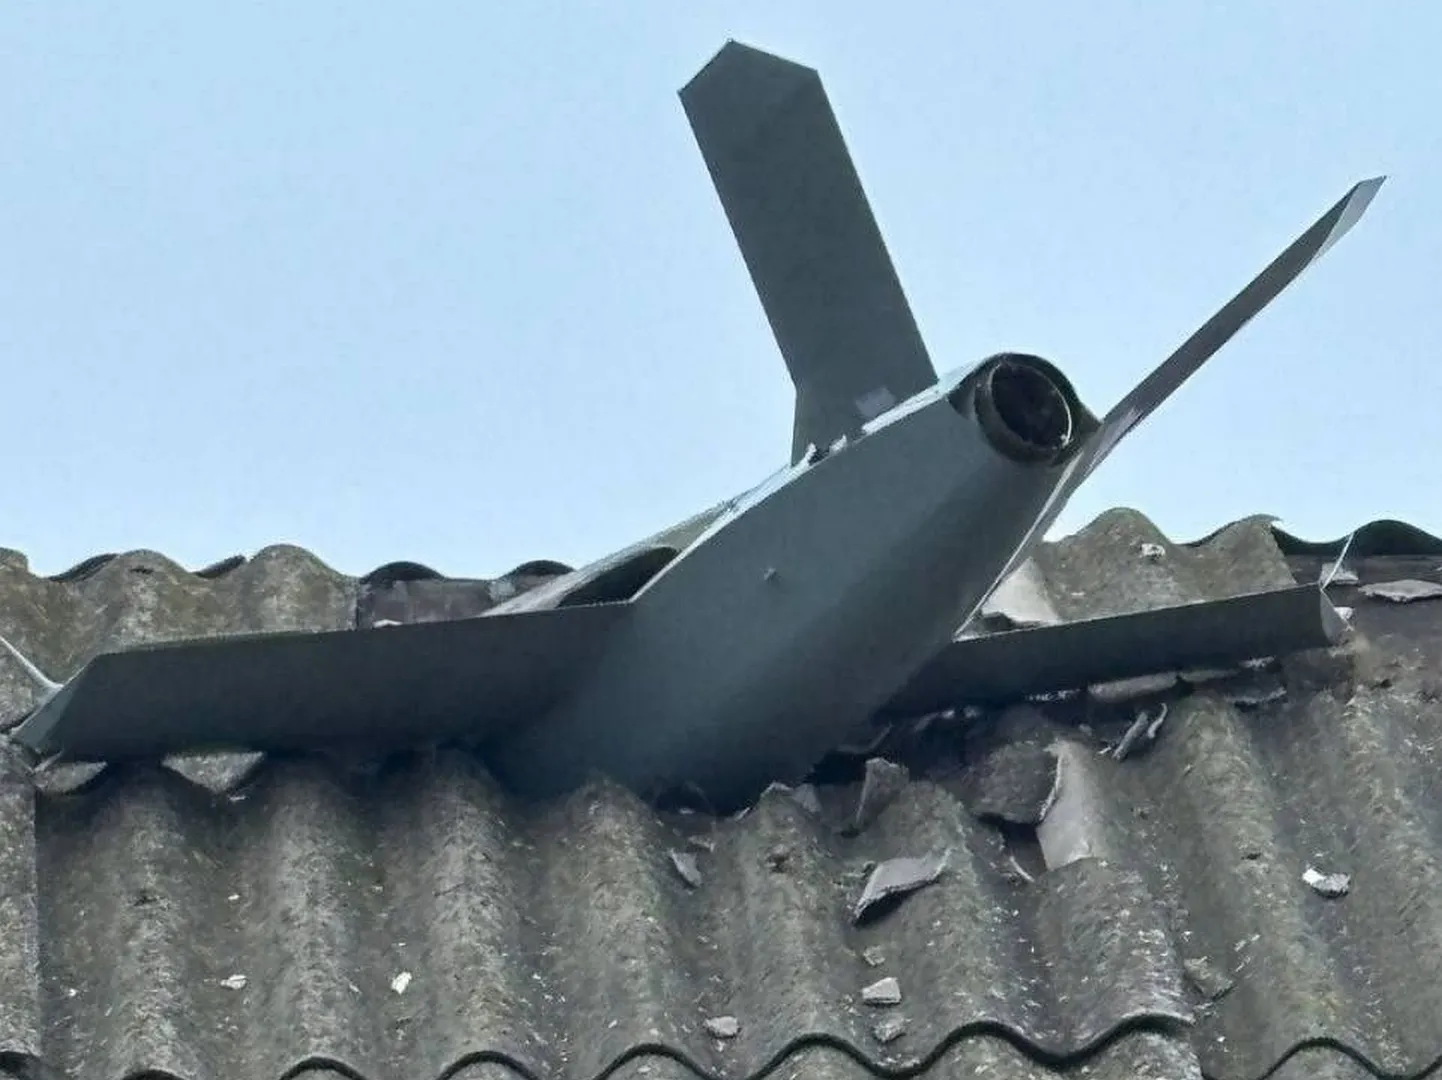 Vabatahtlikud geolokaatorid määrasid selle Ukraina drooni asukohaks Berdjanski. Tegemist on Ukraina tootja Ukrjet õppedrooniga sarnase, kuid ilmselt sellest ümber ehitatud ründedrooniga, mis võib kiirelt ja radaritele nähtamatult kaugele vaenlase tagalasse lennata.